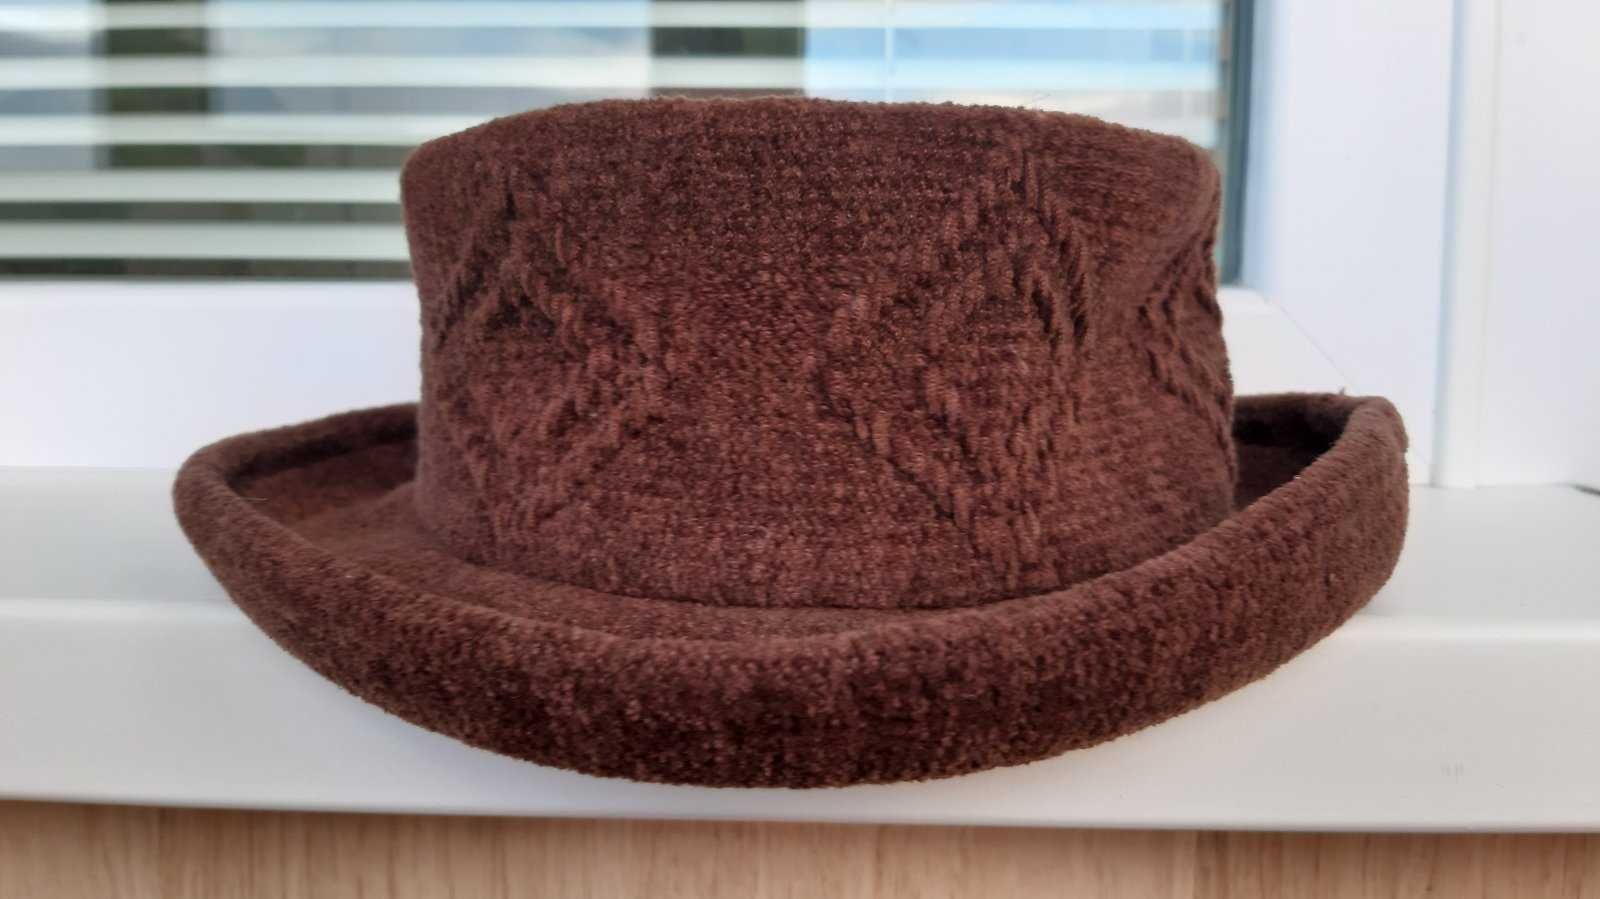 Продам женскую вязанную шляпку пр-во Корея, цвет «терракот», б/у.